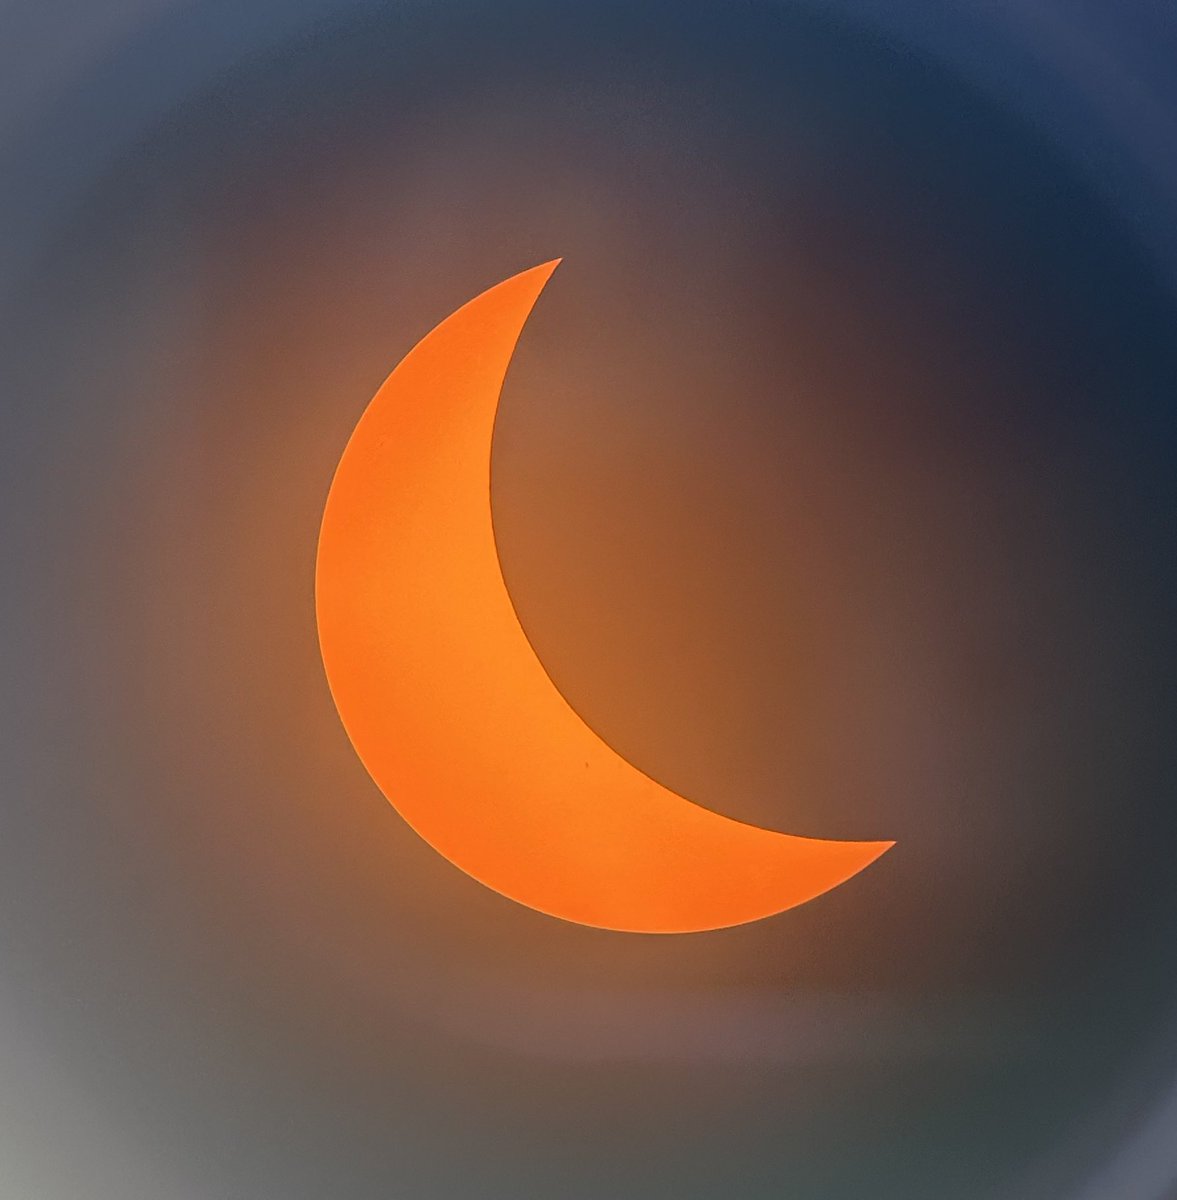 POV: 64% coverage of the #GreatAmericanEclipse ☀️🔭